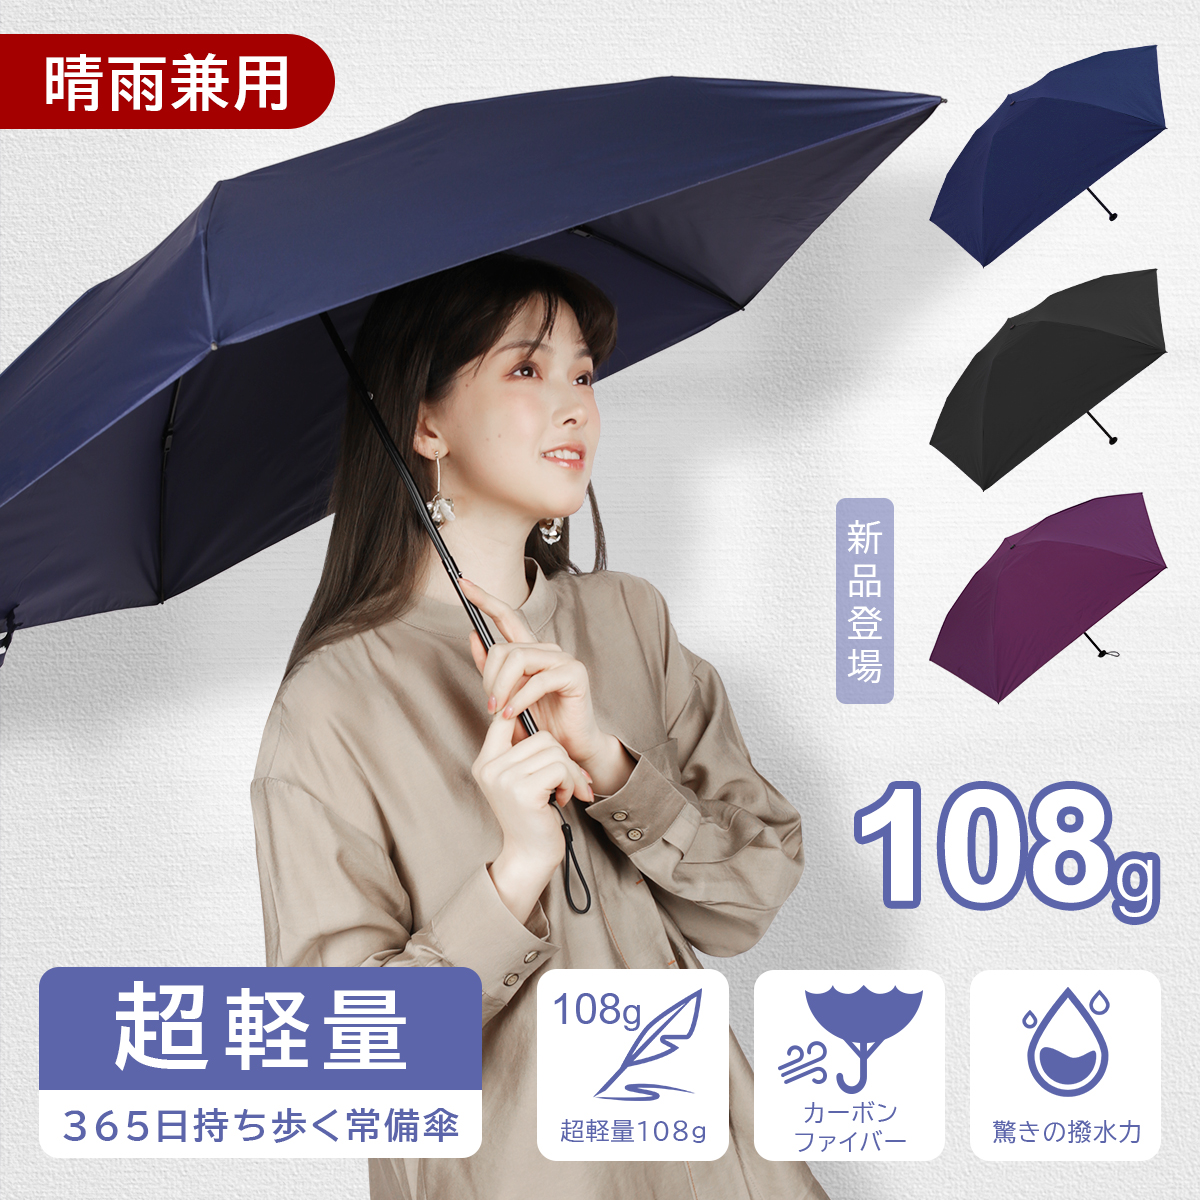 特別価格 在庫一掃折りたたみ傘 日傘 晴雨兼用 超軽量 カーボン傘